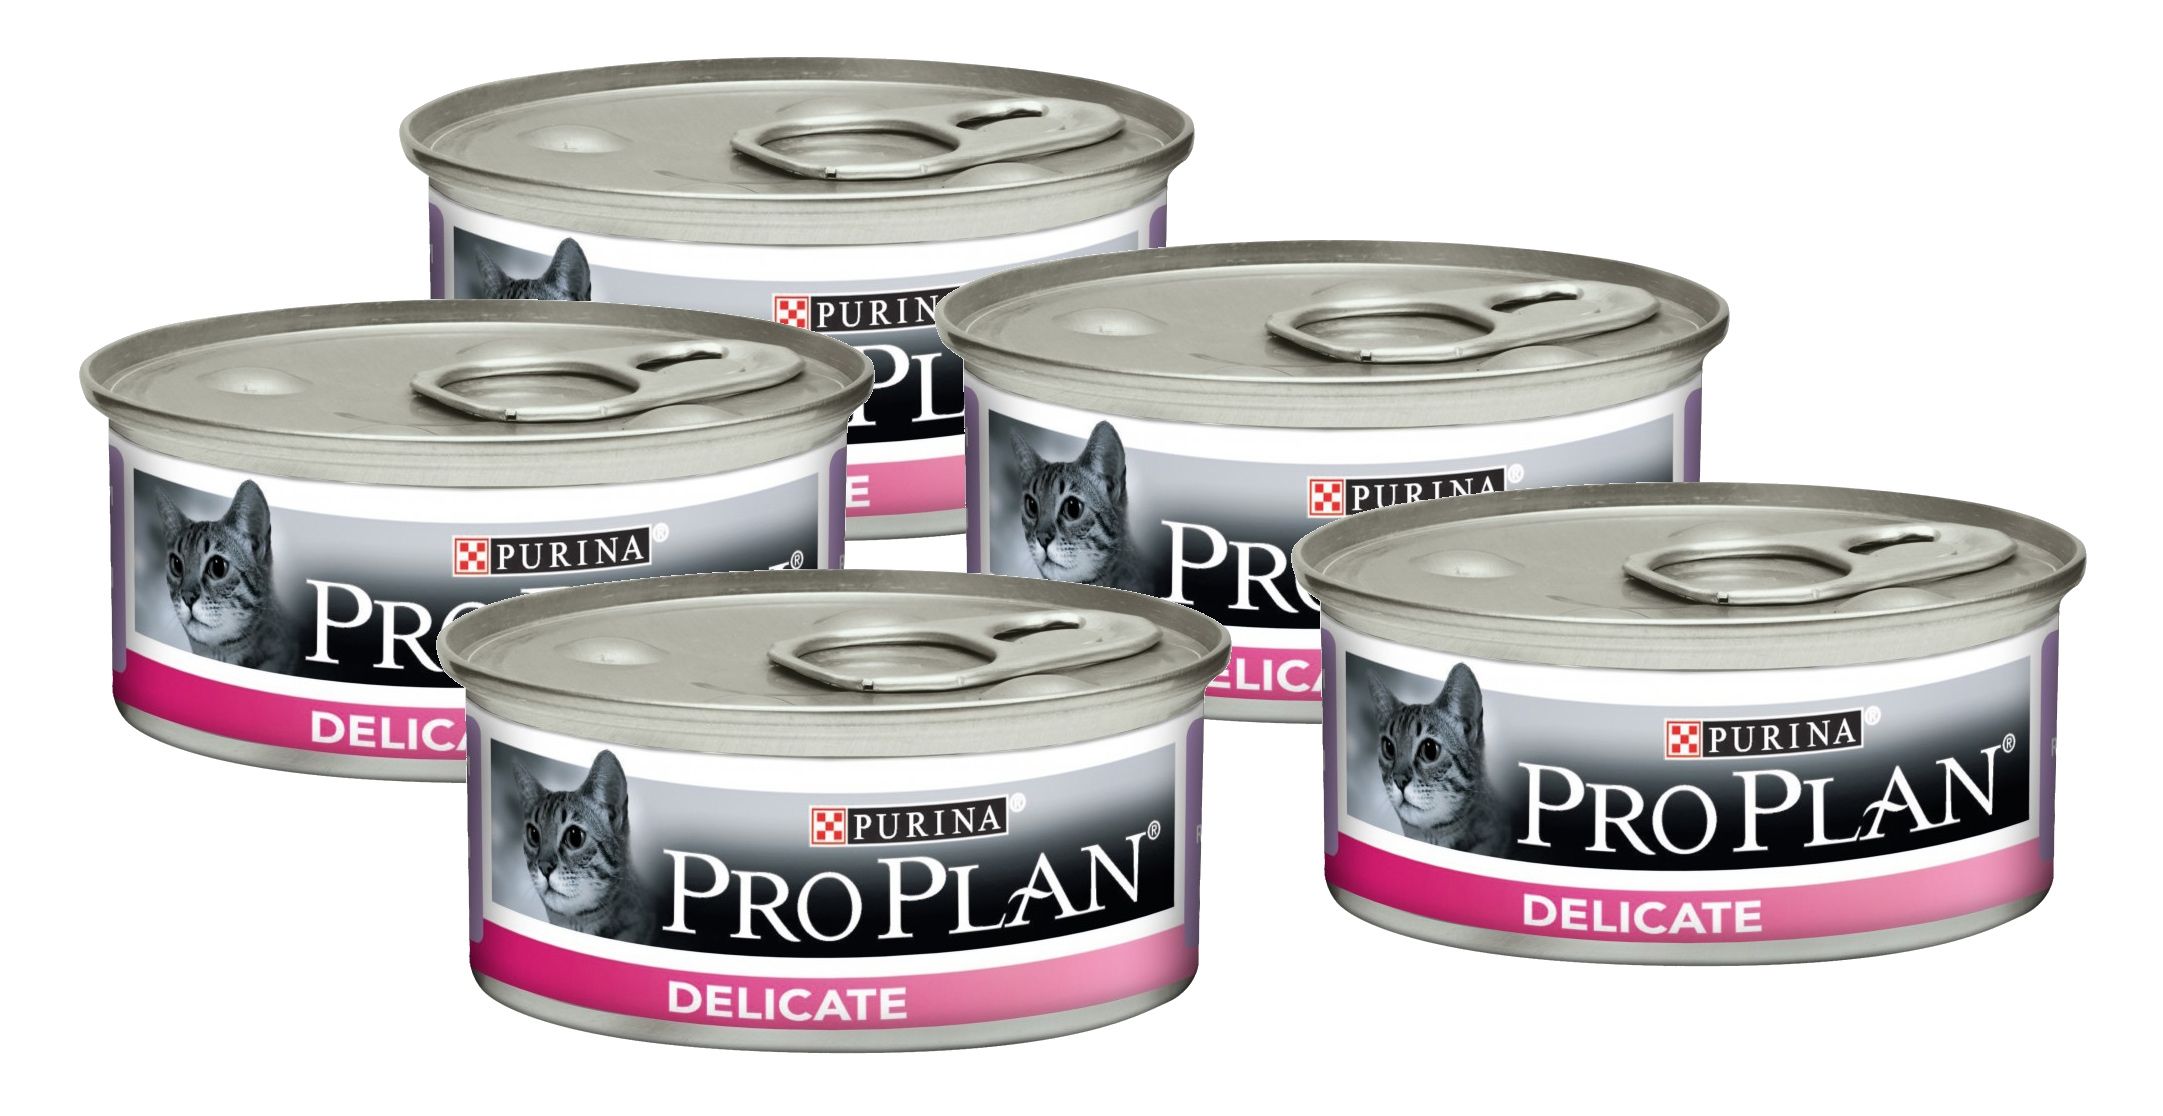 Pro plan для кошек купить спб. Pro Plan delicate для кошек консервы. Purina Pro Plan консервы для кошек. Консервы для кошек Pro Plan delicate, индейка, 85г. Пурина Деликат консервы с индейкой для кошек.